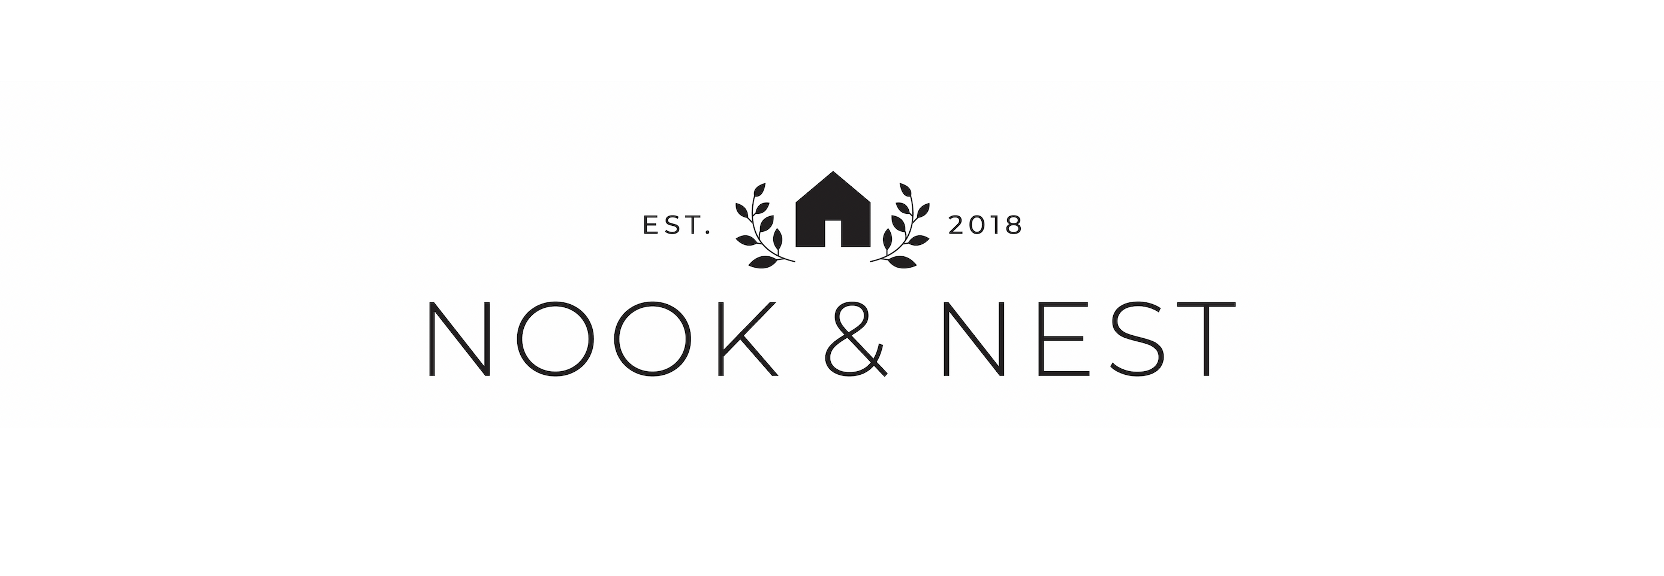 Nook & Nest